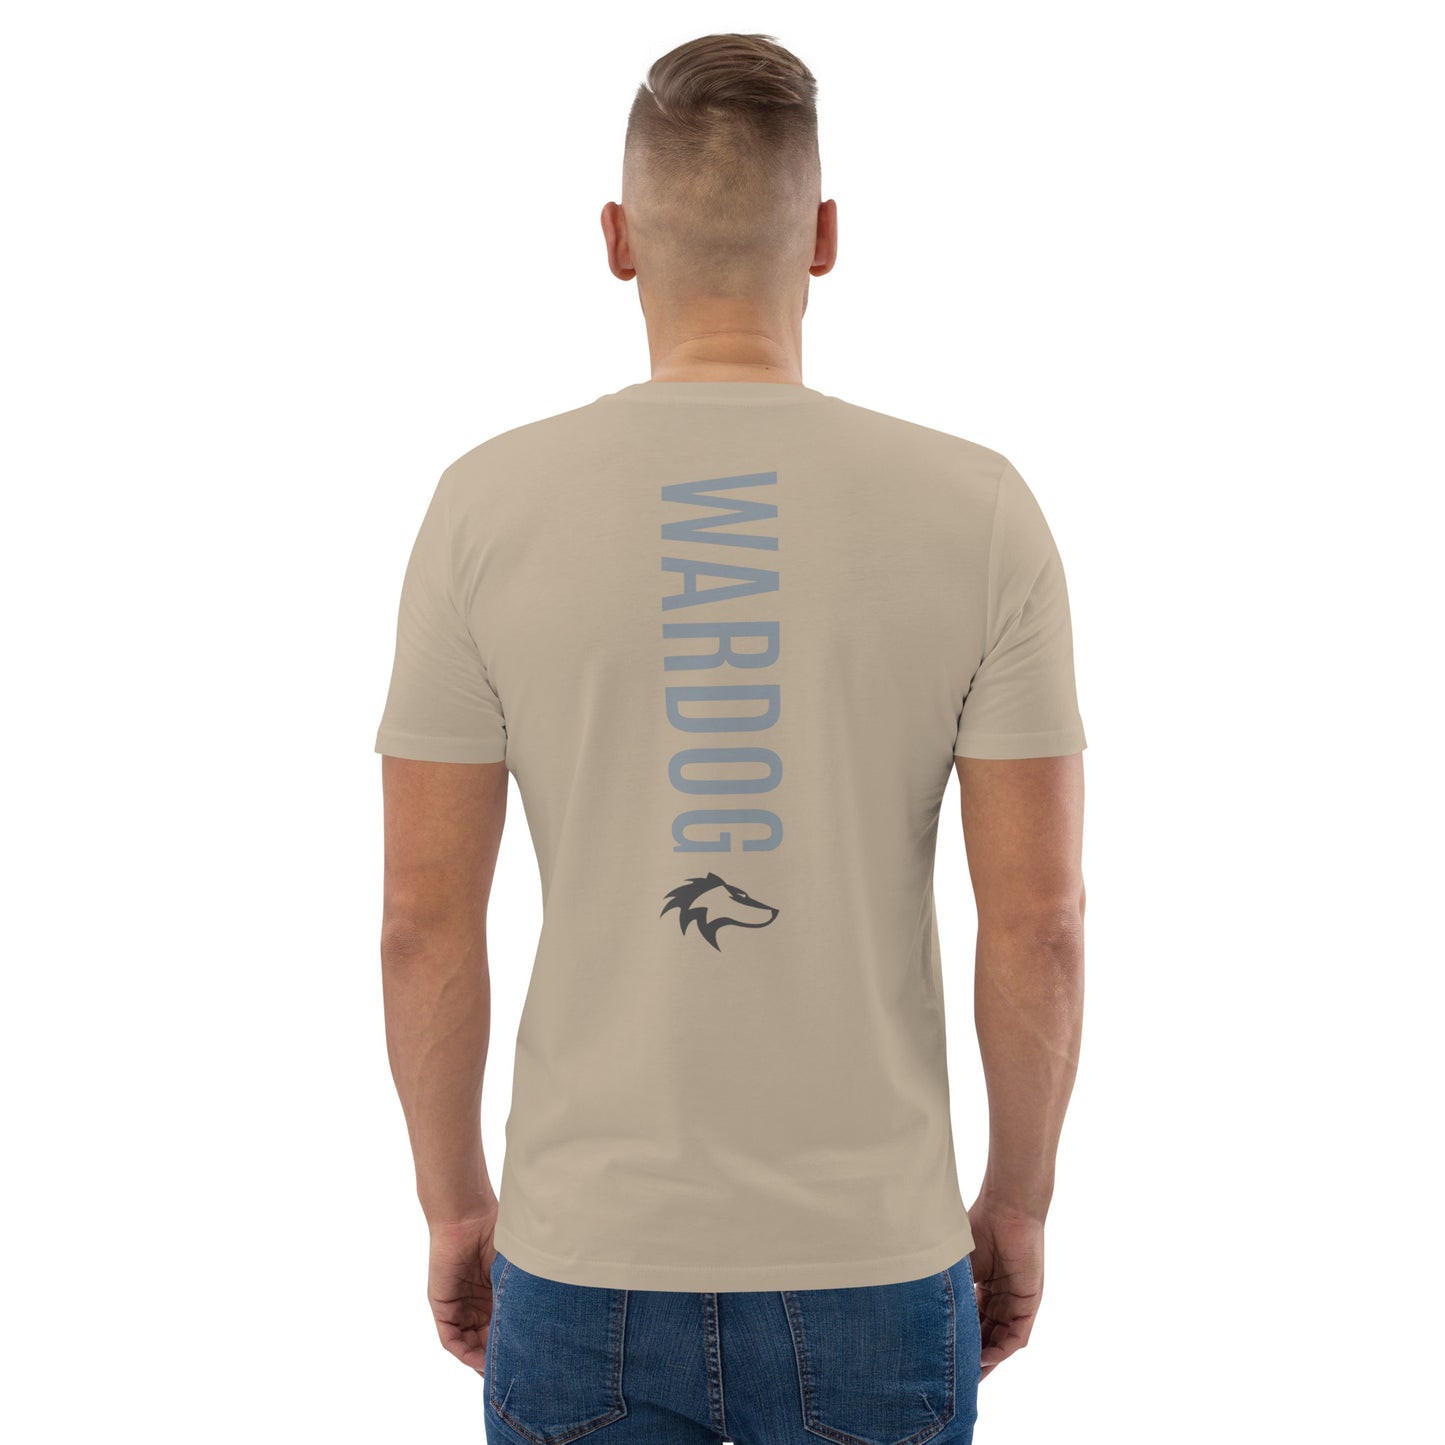 WARDOG BACK t-shirt